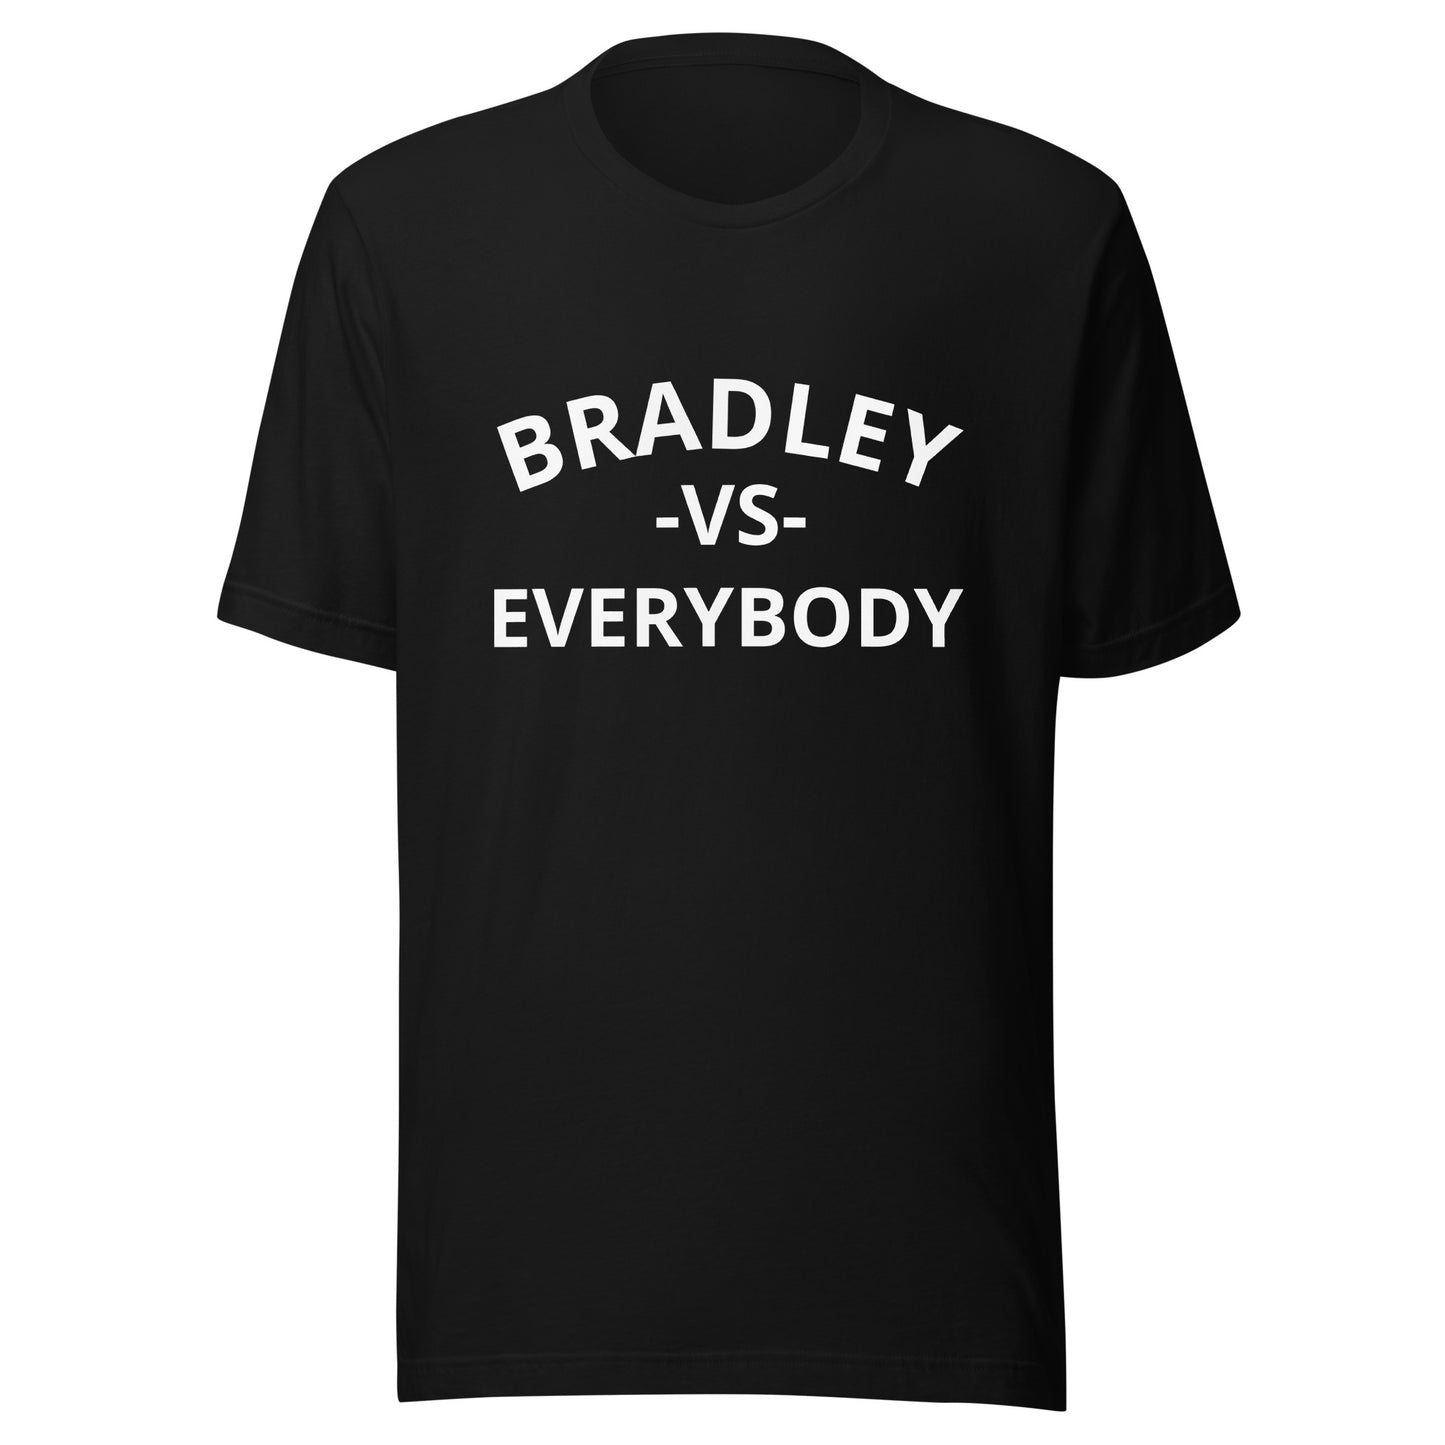 Bradley vs Everybody T-Shirt